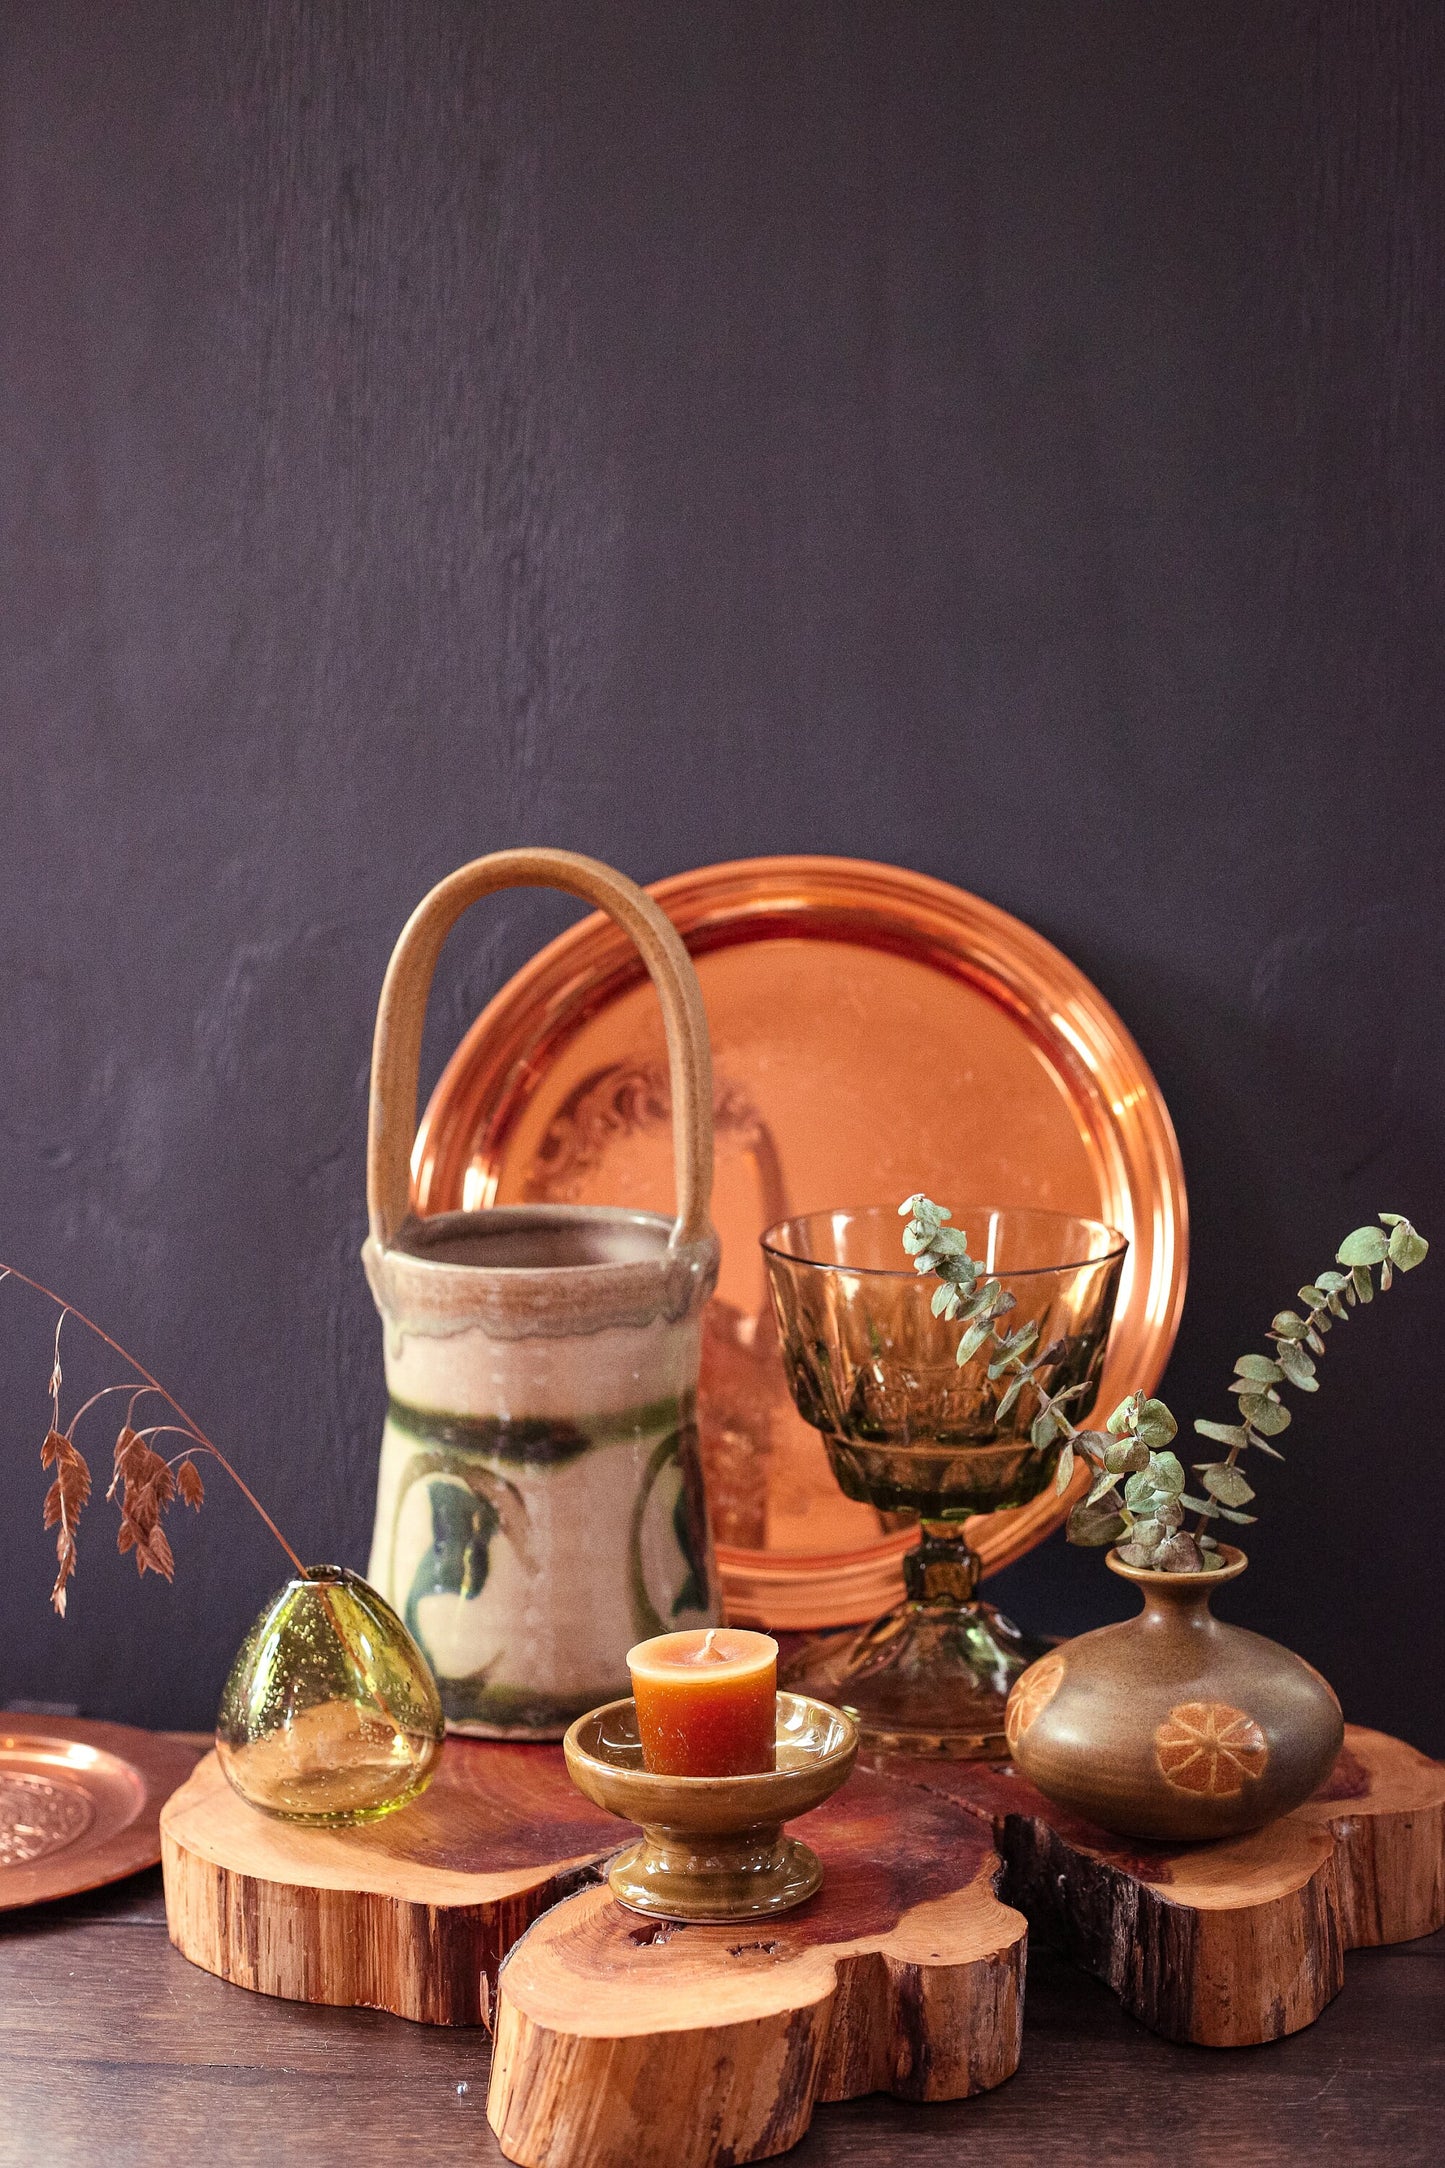 Olive Green Depression Glass Goblet Vase - Vintage Pedestal Vase or Candy Dish